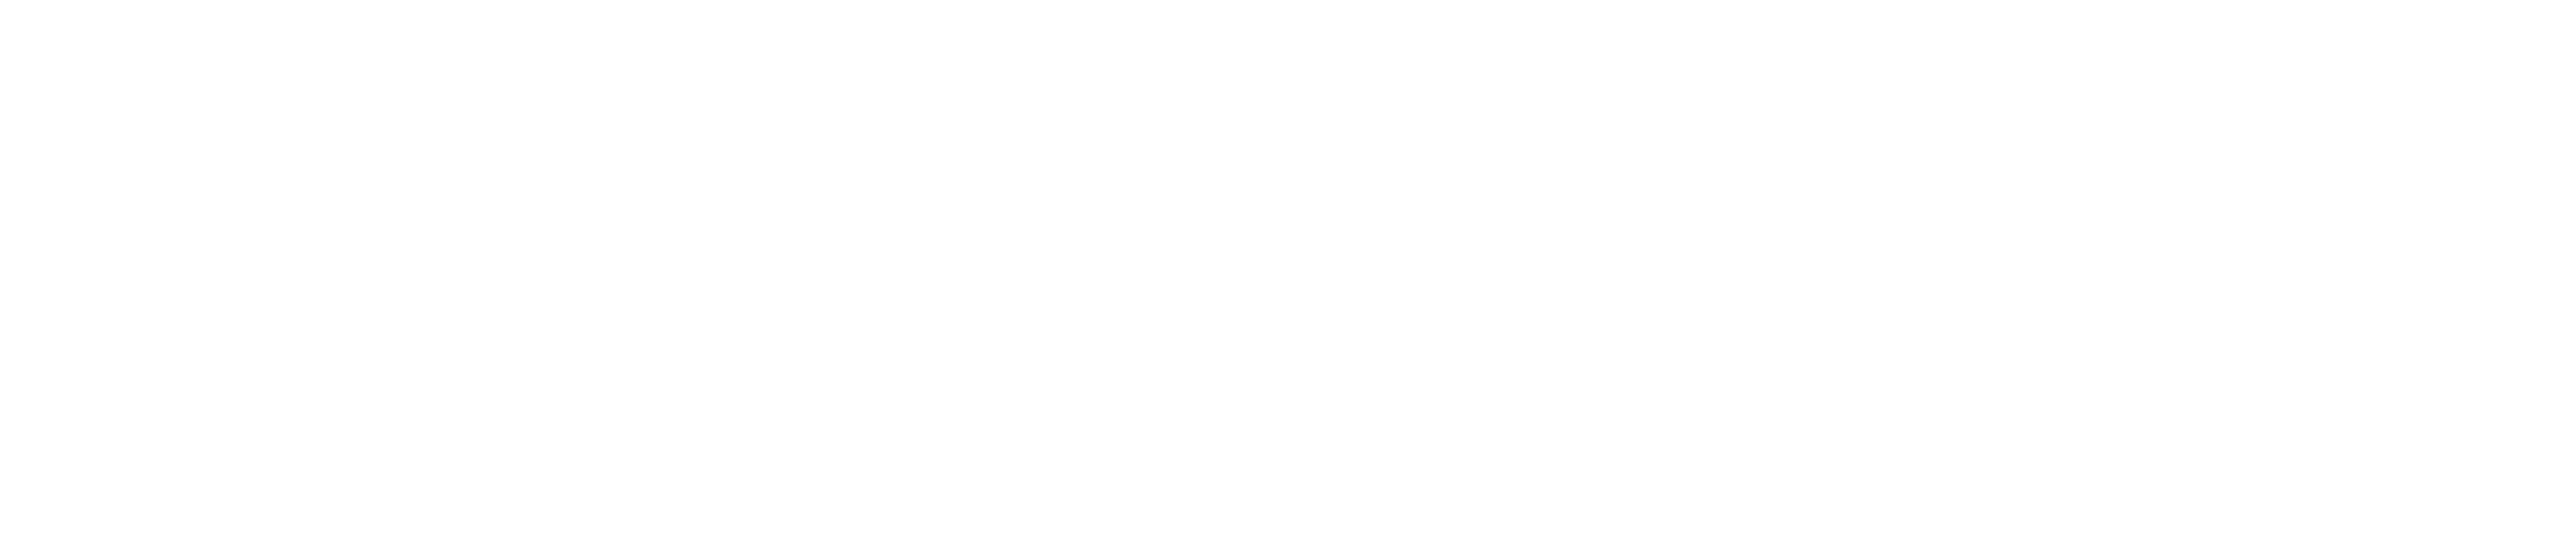 TheAlliance_white_logo